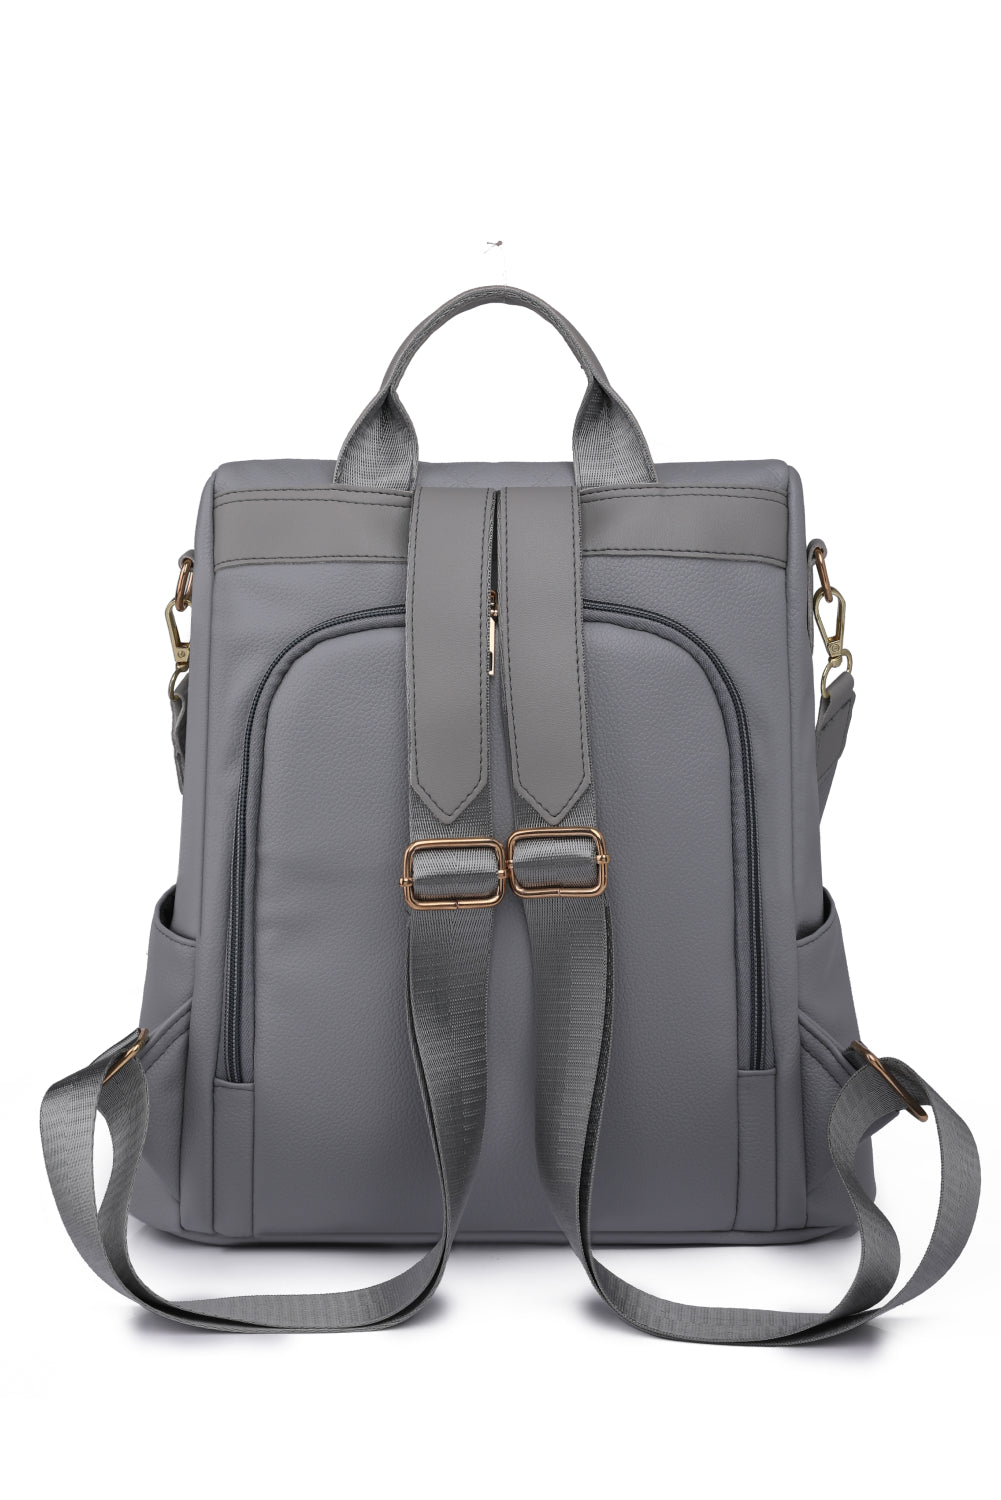 Pum-Pum Zipper Backpack - ONLINE EXCLUSIVE